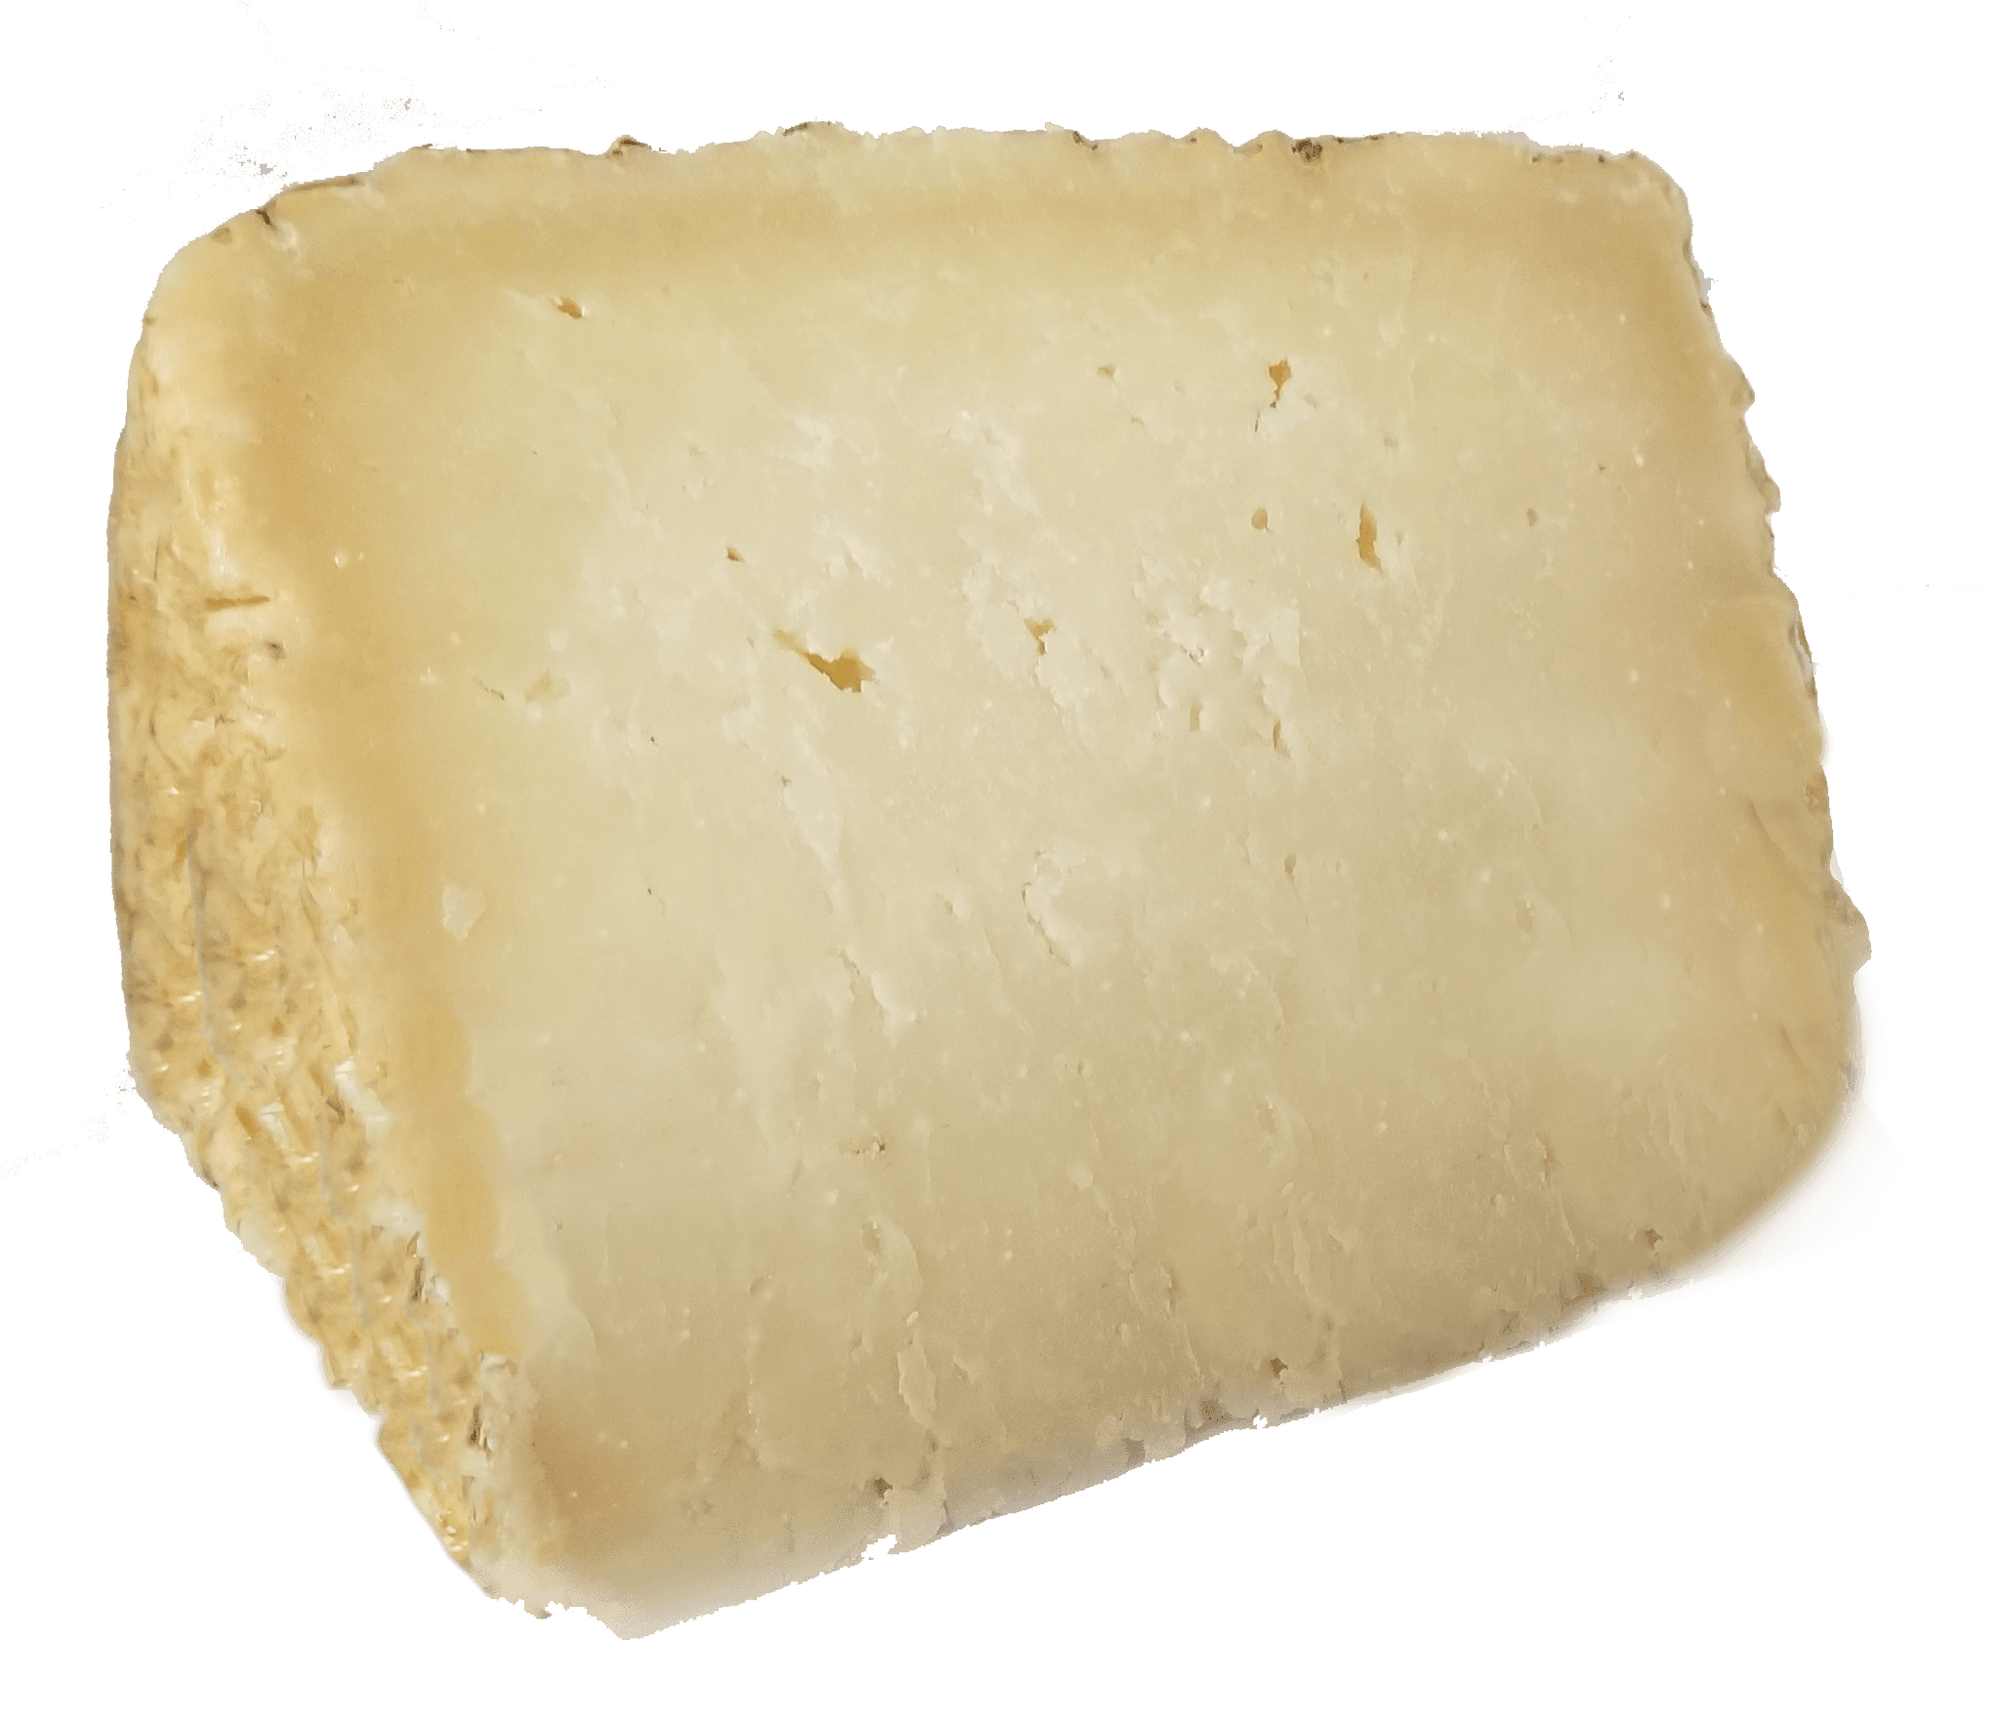 Italian Cheese - Moliterno Italian Cheese - Organic Sheep Milk (Pecorino) - 1 Pound Slice - Product Of Italy